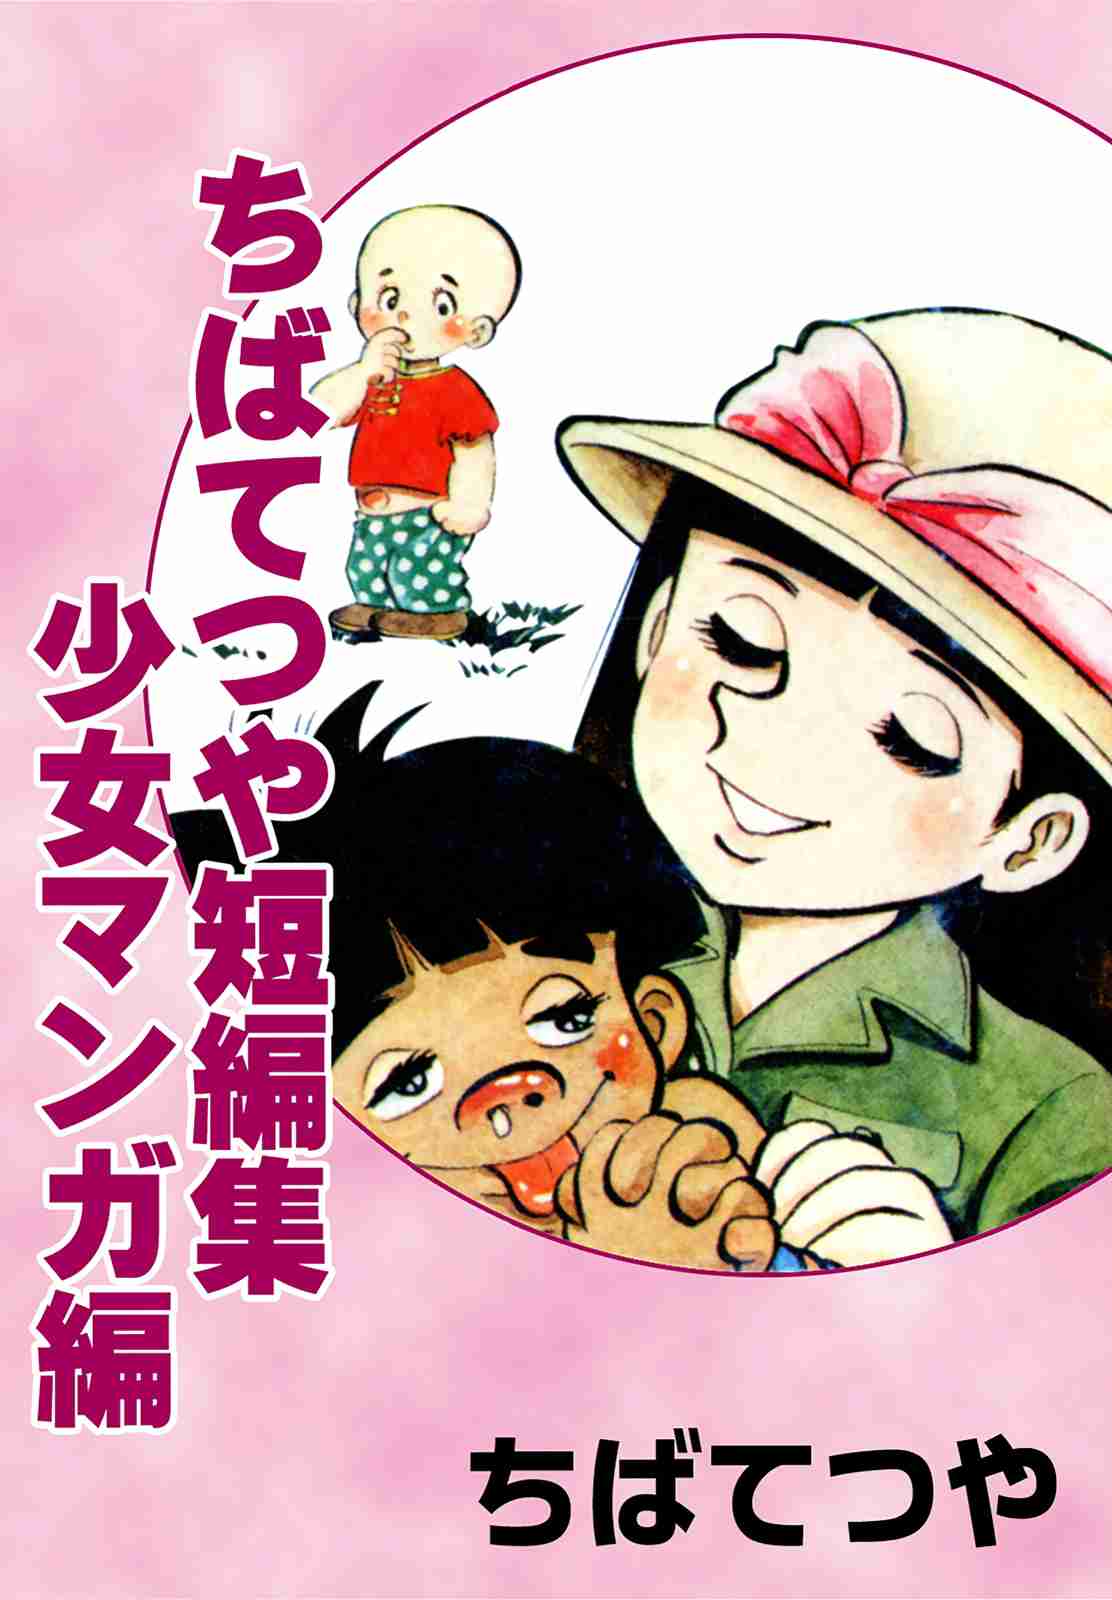 Tetsuya Chiba Short Stories - Shojo Manga 1